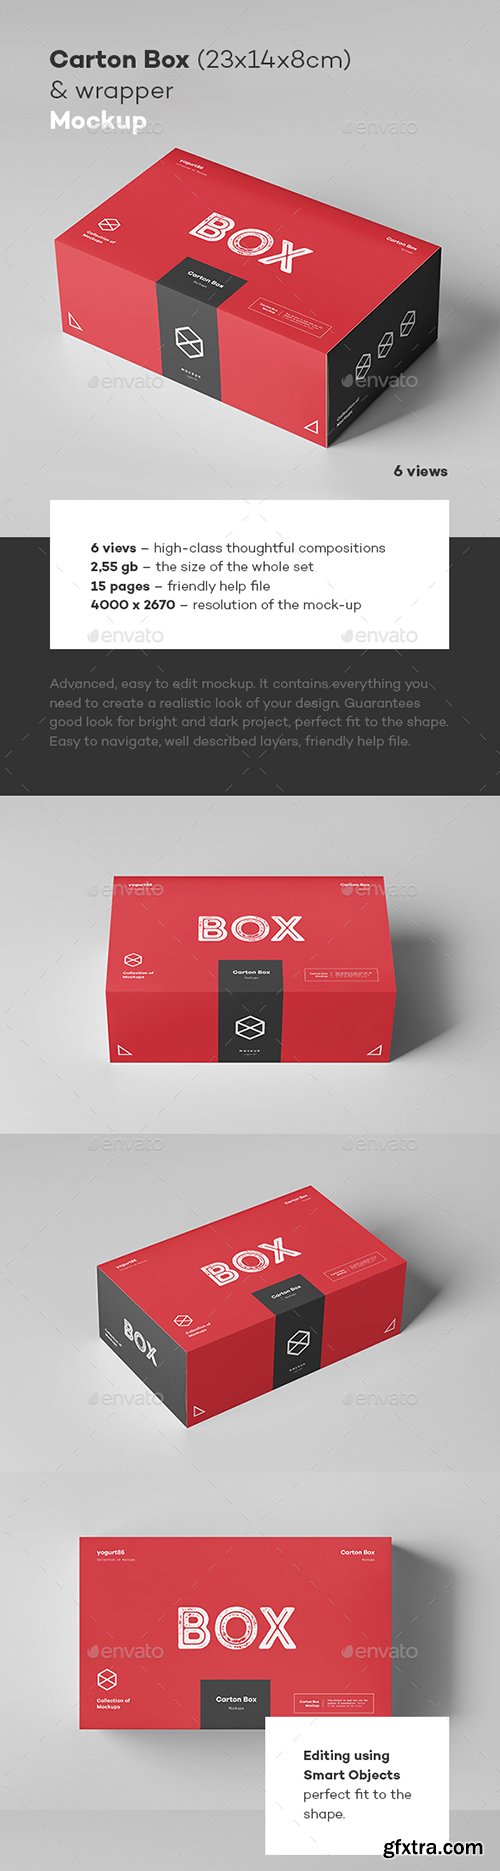 Graphicriver - Carton Box Mock-up 23x14x8 & Wrapper 22713078